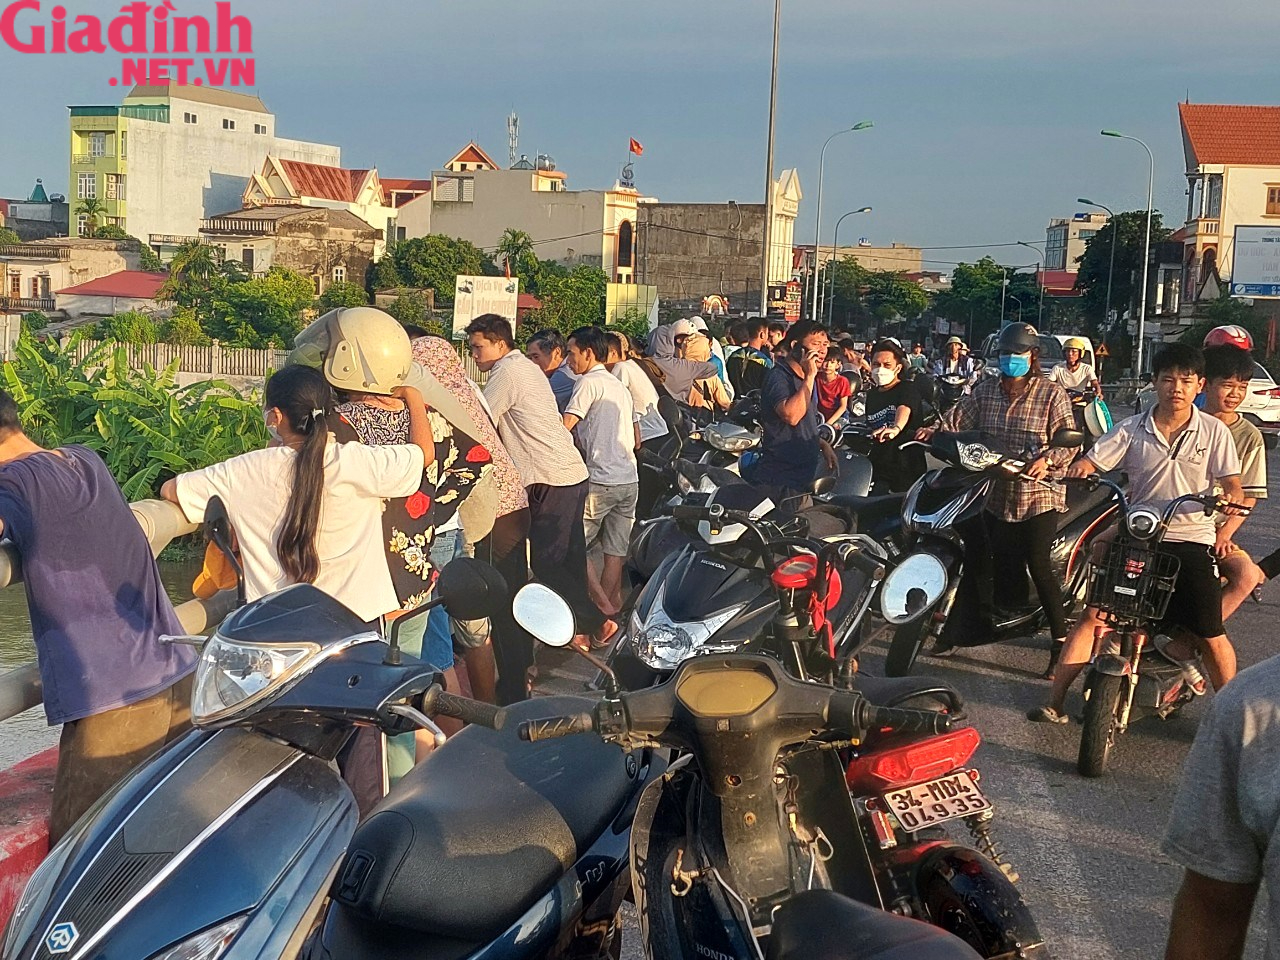 Hải Dương: Người đàn ông huyện Ninh Giang đi xe máy lên cầu Ràm bất ngờ nhảy xuống sông Cửu An - Ảnh 6.